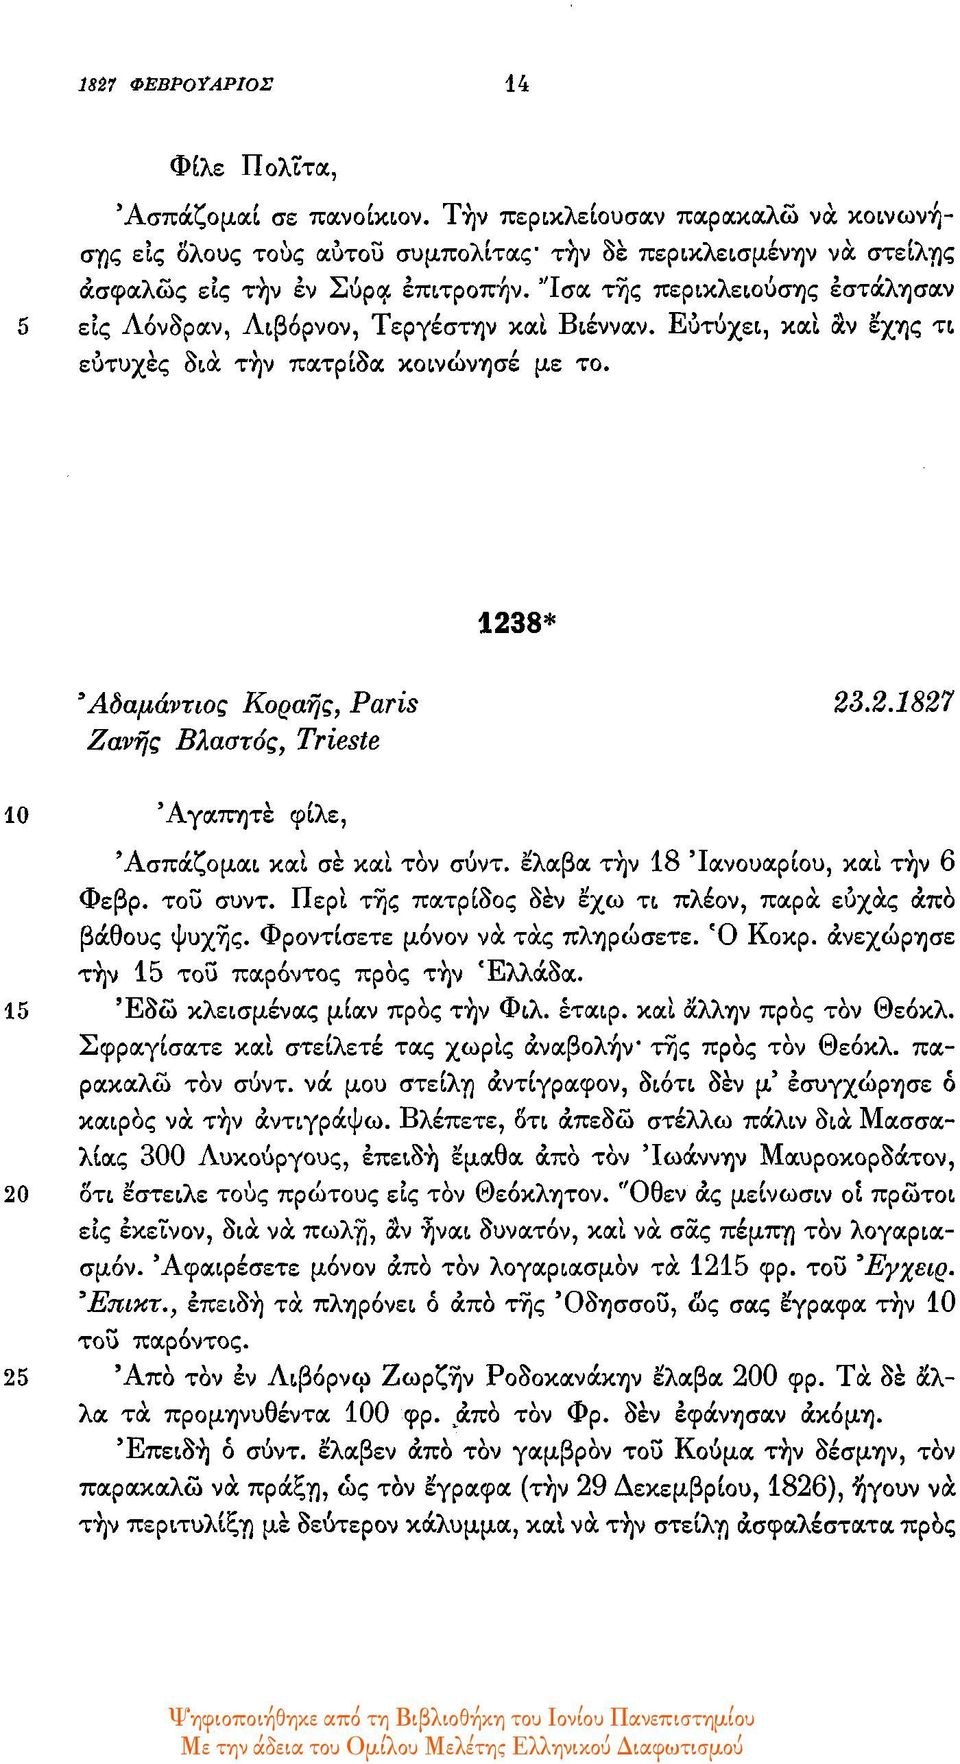 8* Αδαμάντιος Κοραής, Paris 23.2.1827 Ζανής Βλαστός, Trieste 10 Αγαπητέ φίλε, Ασπάζομαι και σε και τον σύντ. έλαβα την 18 Ιανουαρίου, και την 6 Φεβρ. του συντ.